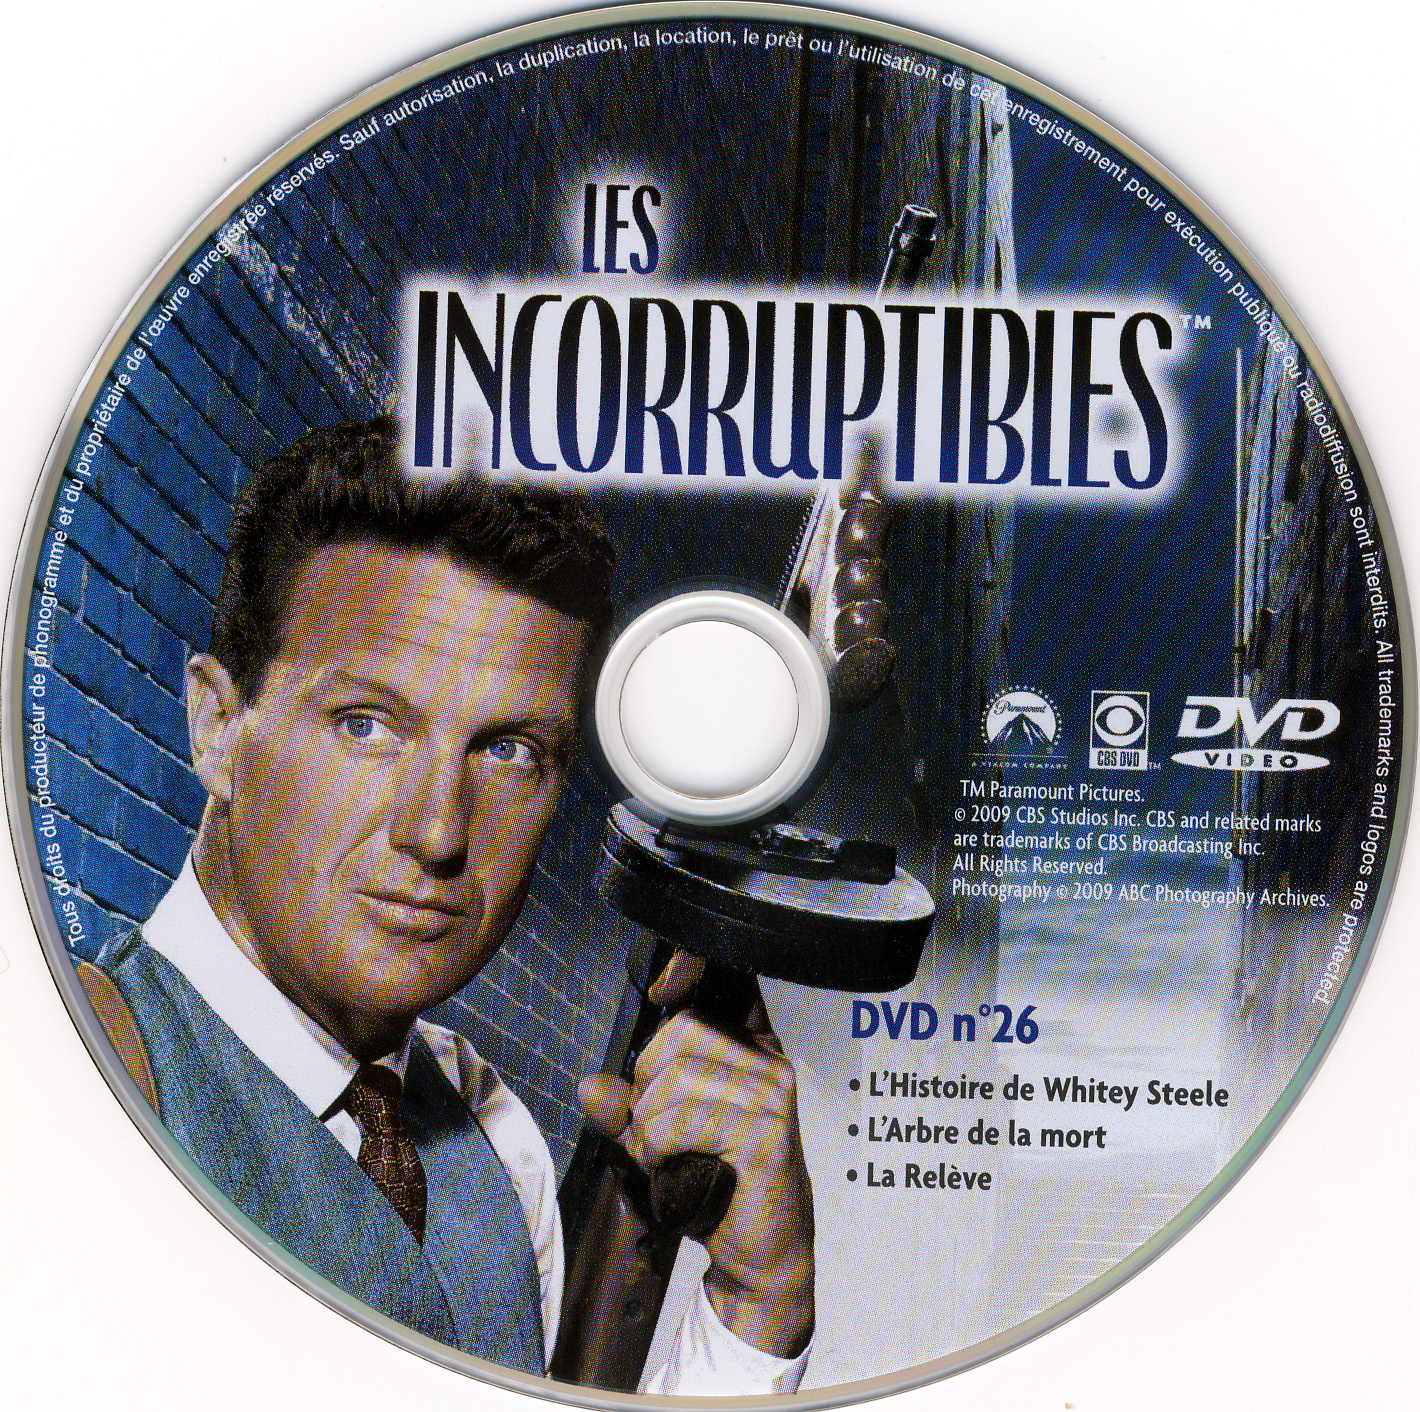 Les incorruptibles intgrale DVD 26